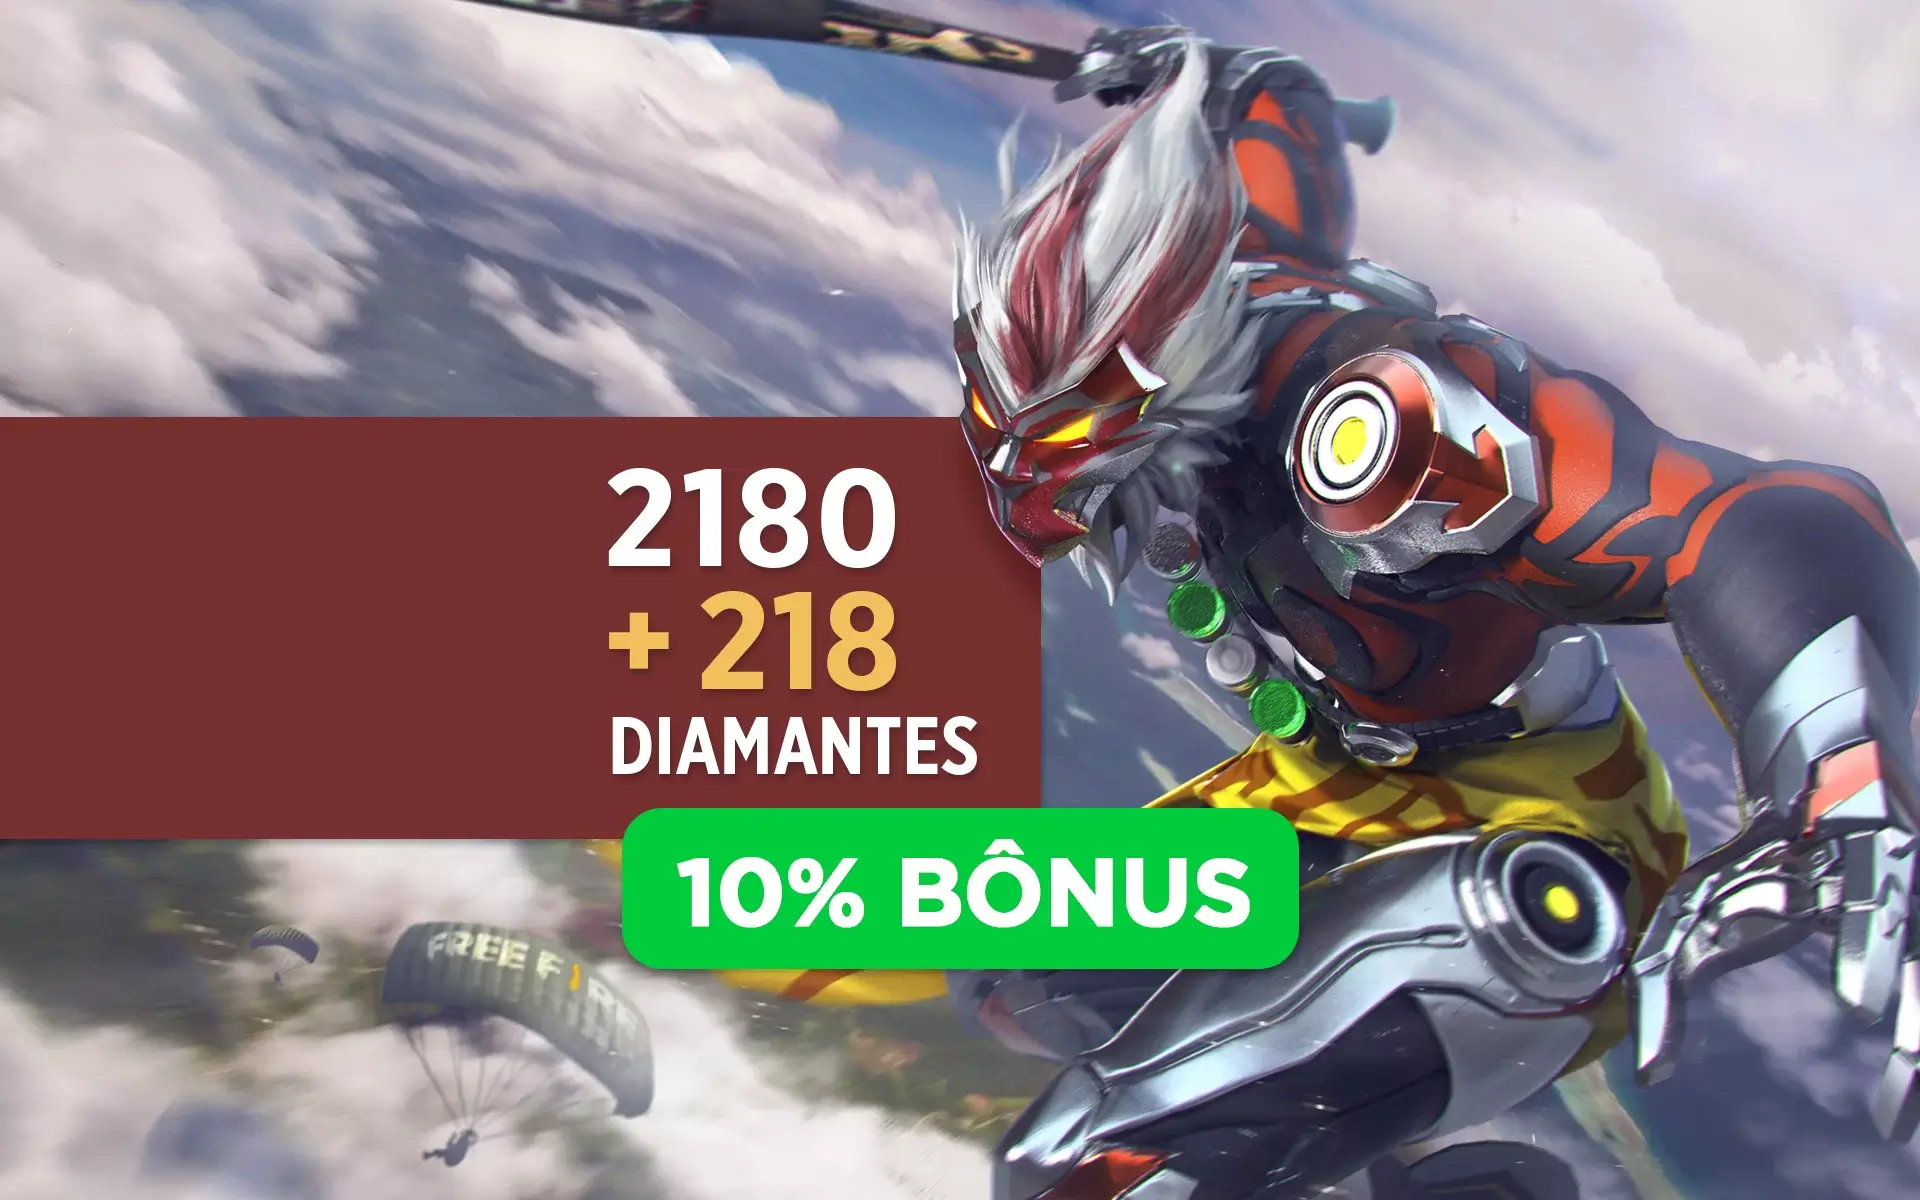 Free Fire - 310 Diamantes + 20% de Bônus - R$13,99